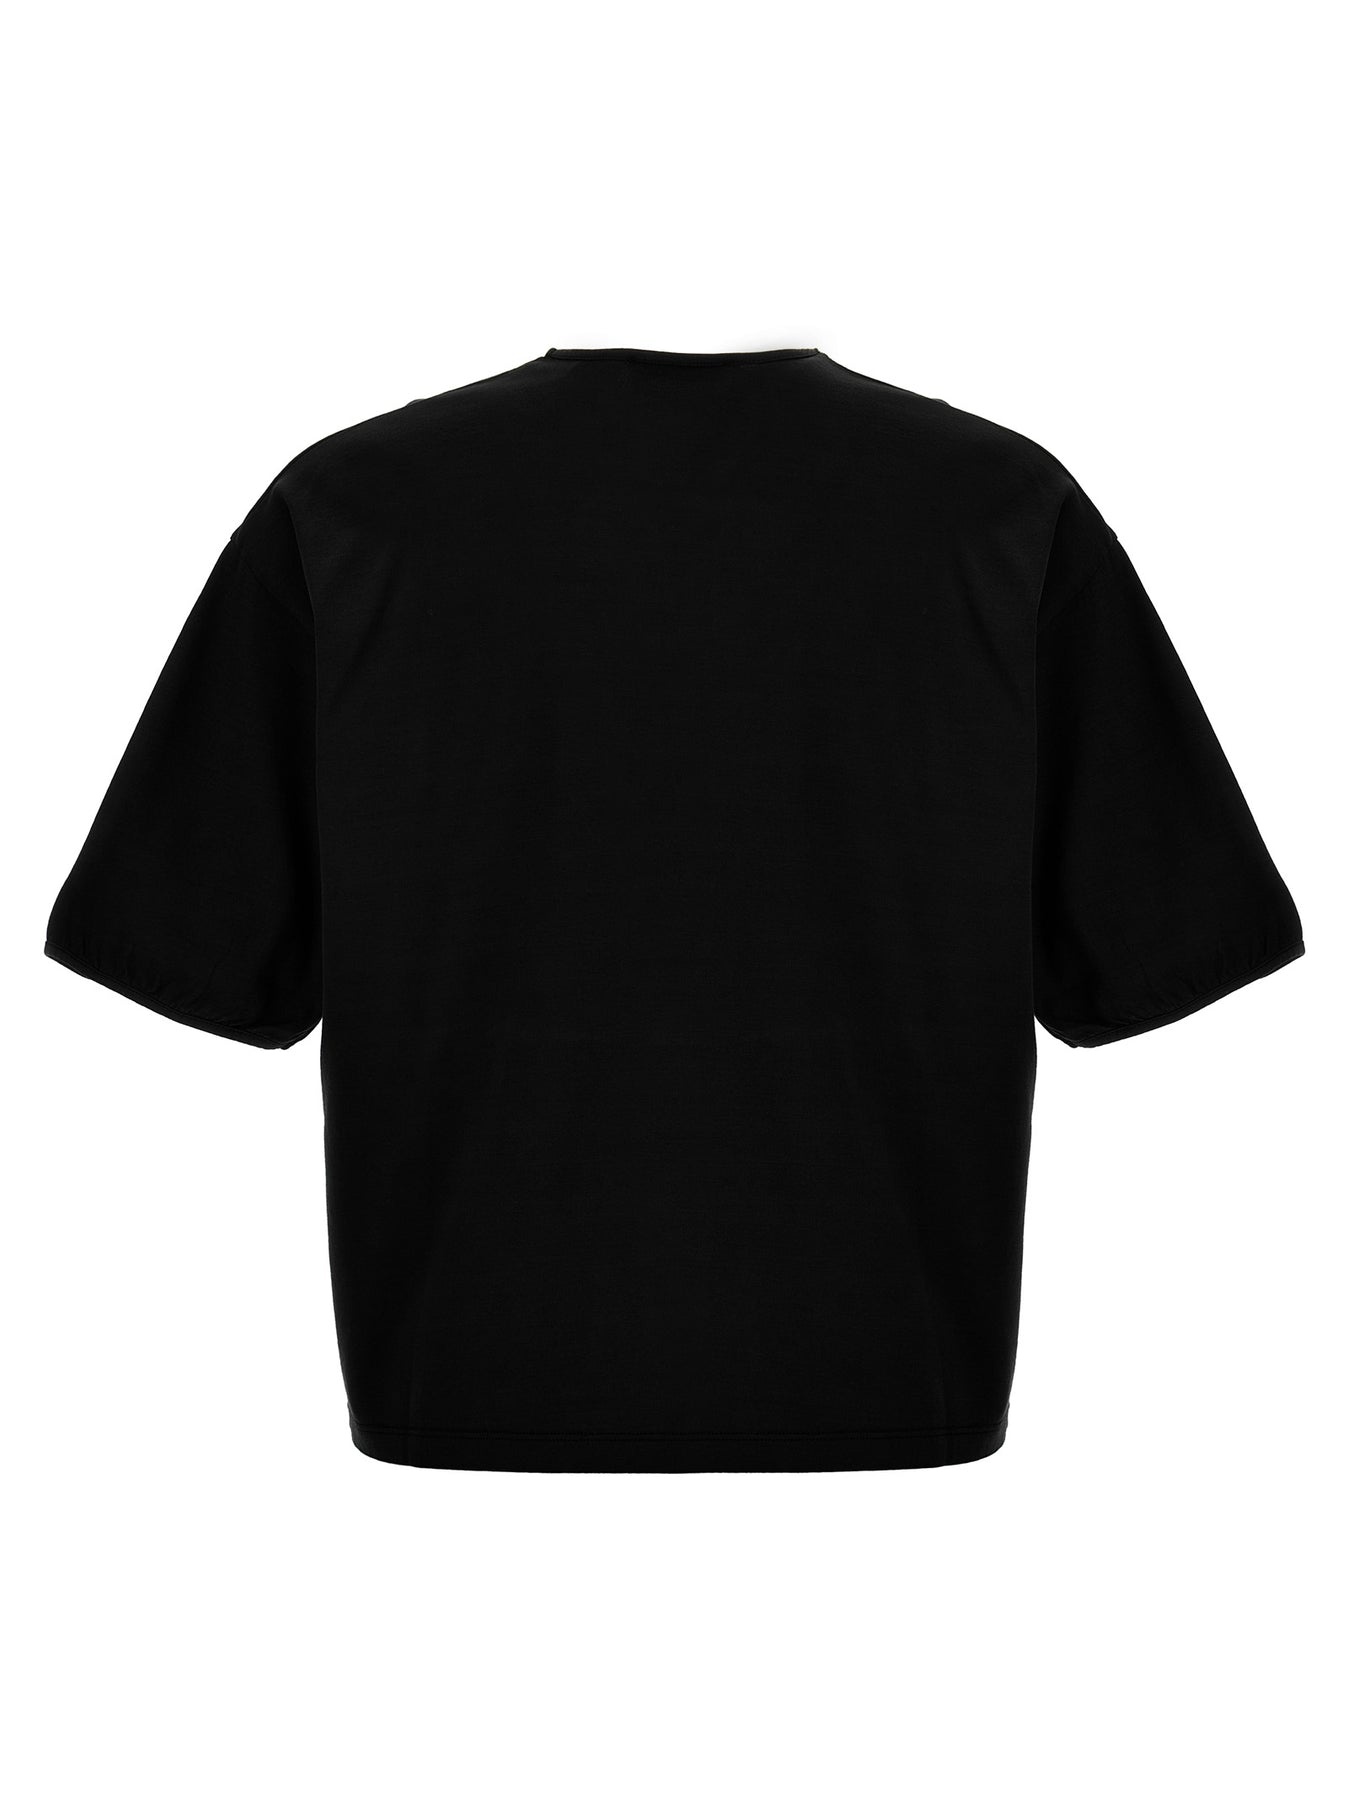 Mercerized Cotton T-Shirt Black - 2